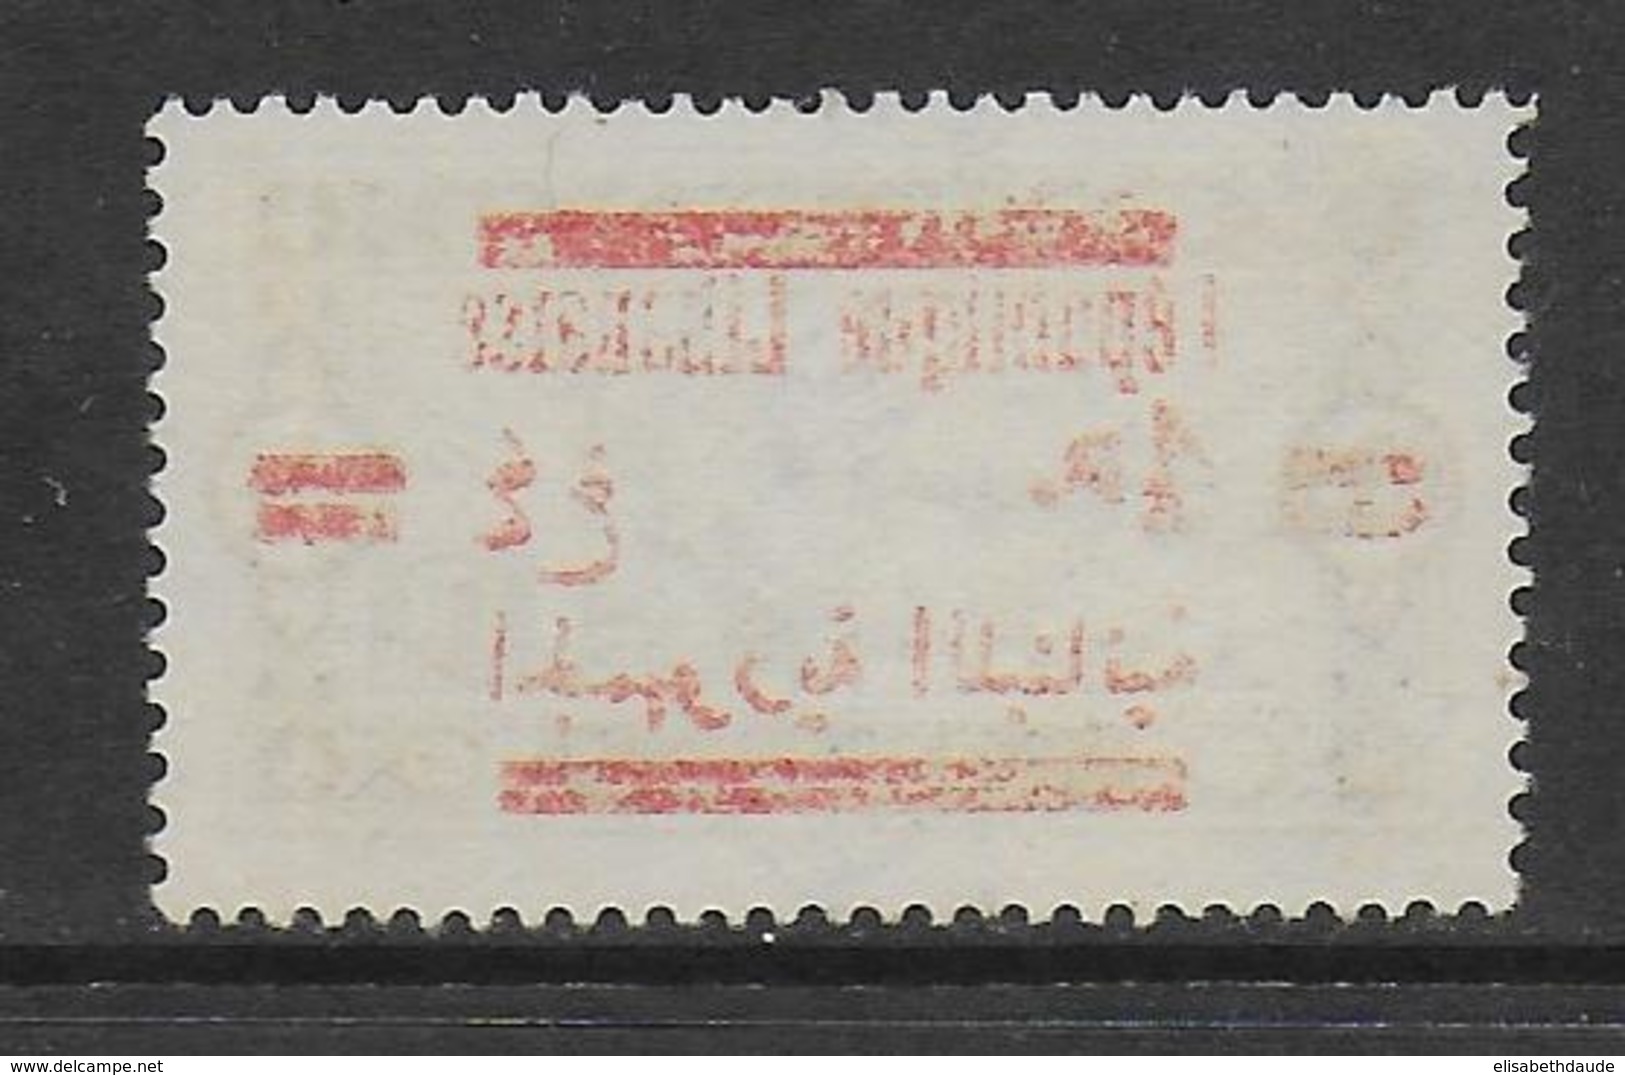 GRAND-LIBAN - 1928 - YVERT N°119 SURCHARGE RECTO-VERSO OBLITERE - COTE = 80 EUR. - Oblitérés